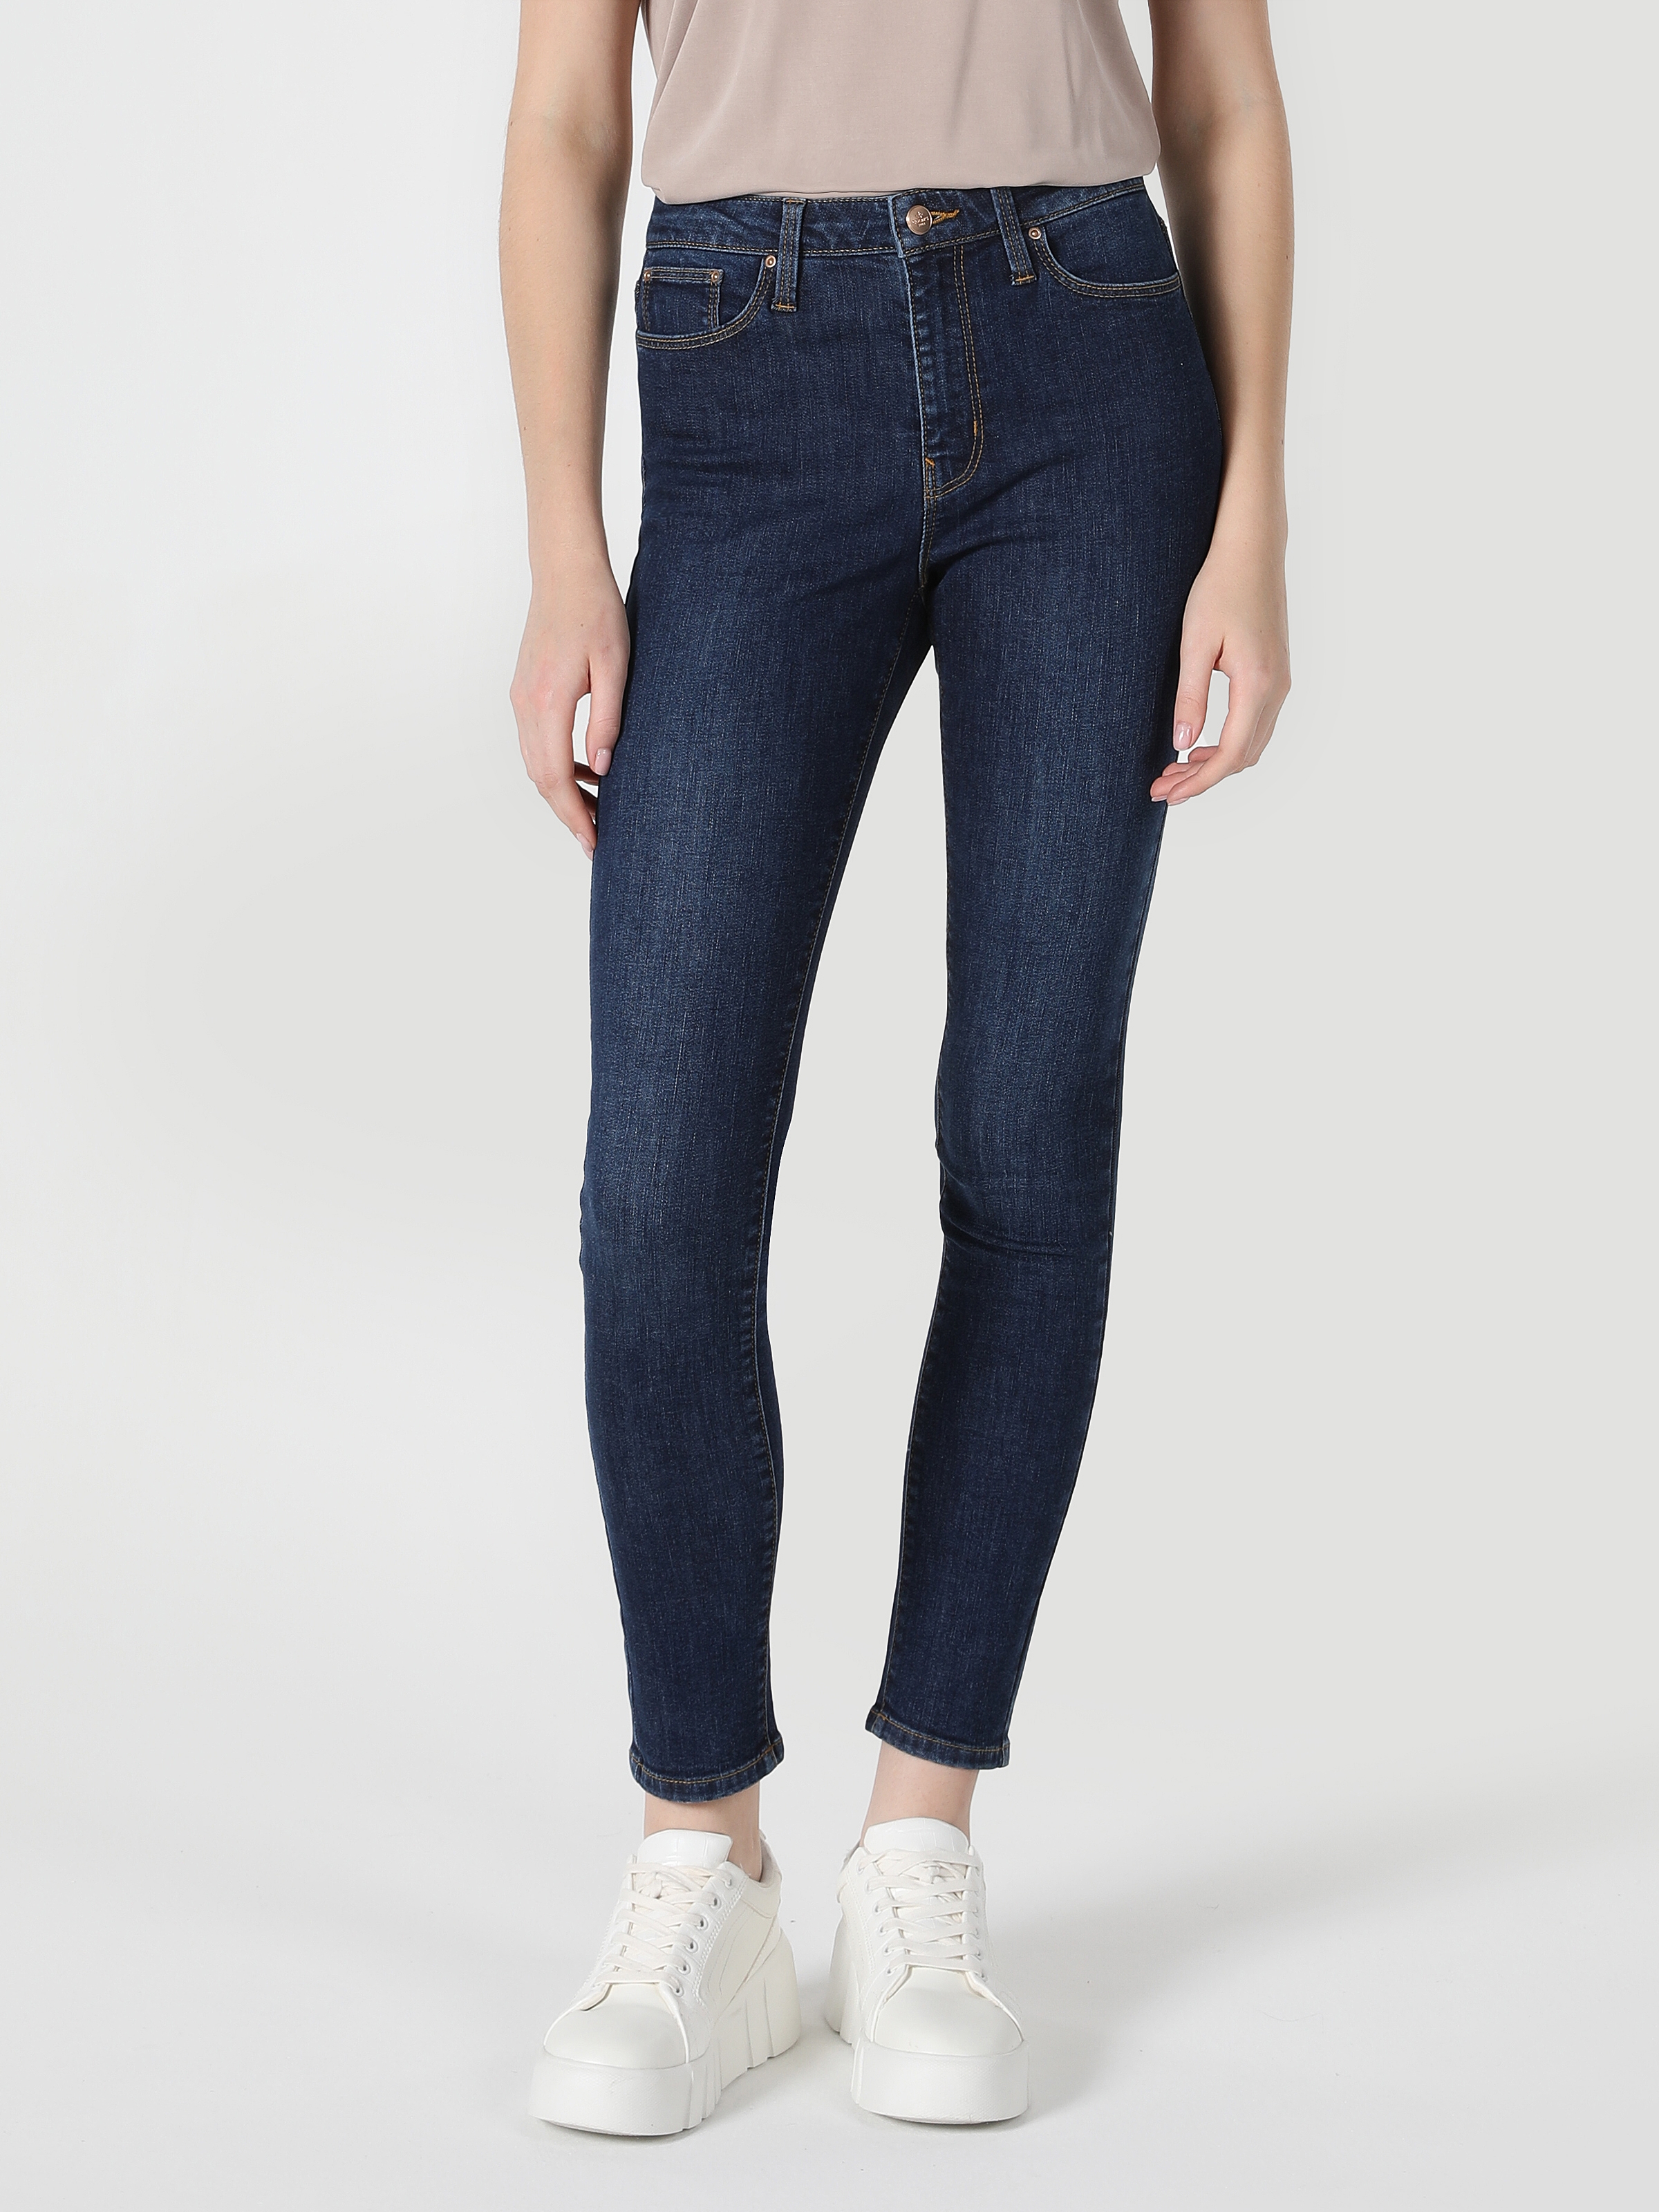 Afficher les détails de 759 Lara Pantalon En Jean Taille Moyenne À Jambe Étroite Coupe Super Slim Bleu Foncé Pour Femme